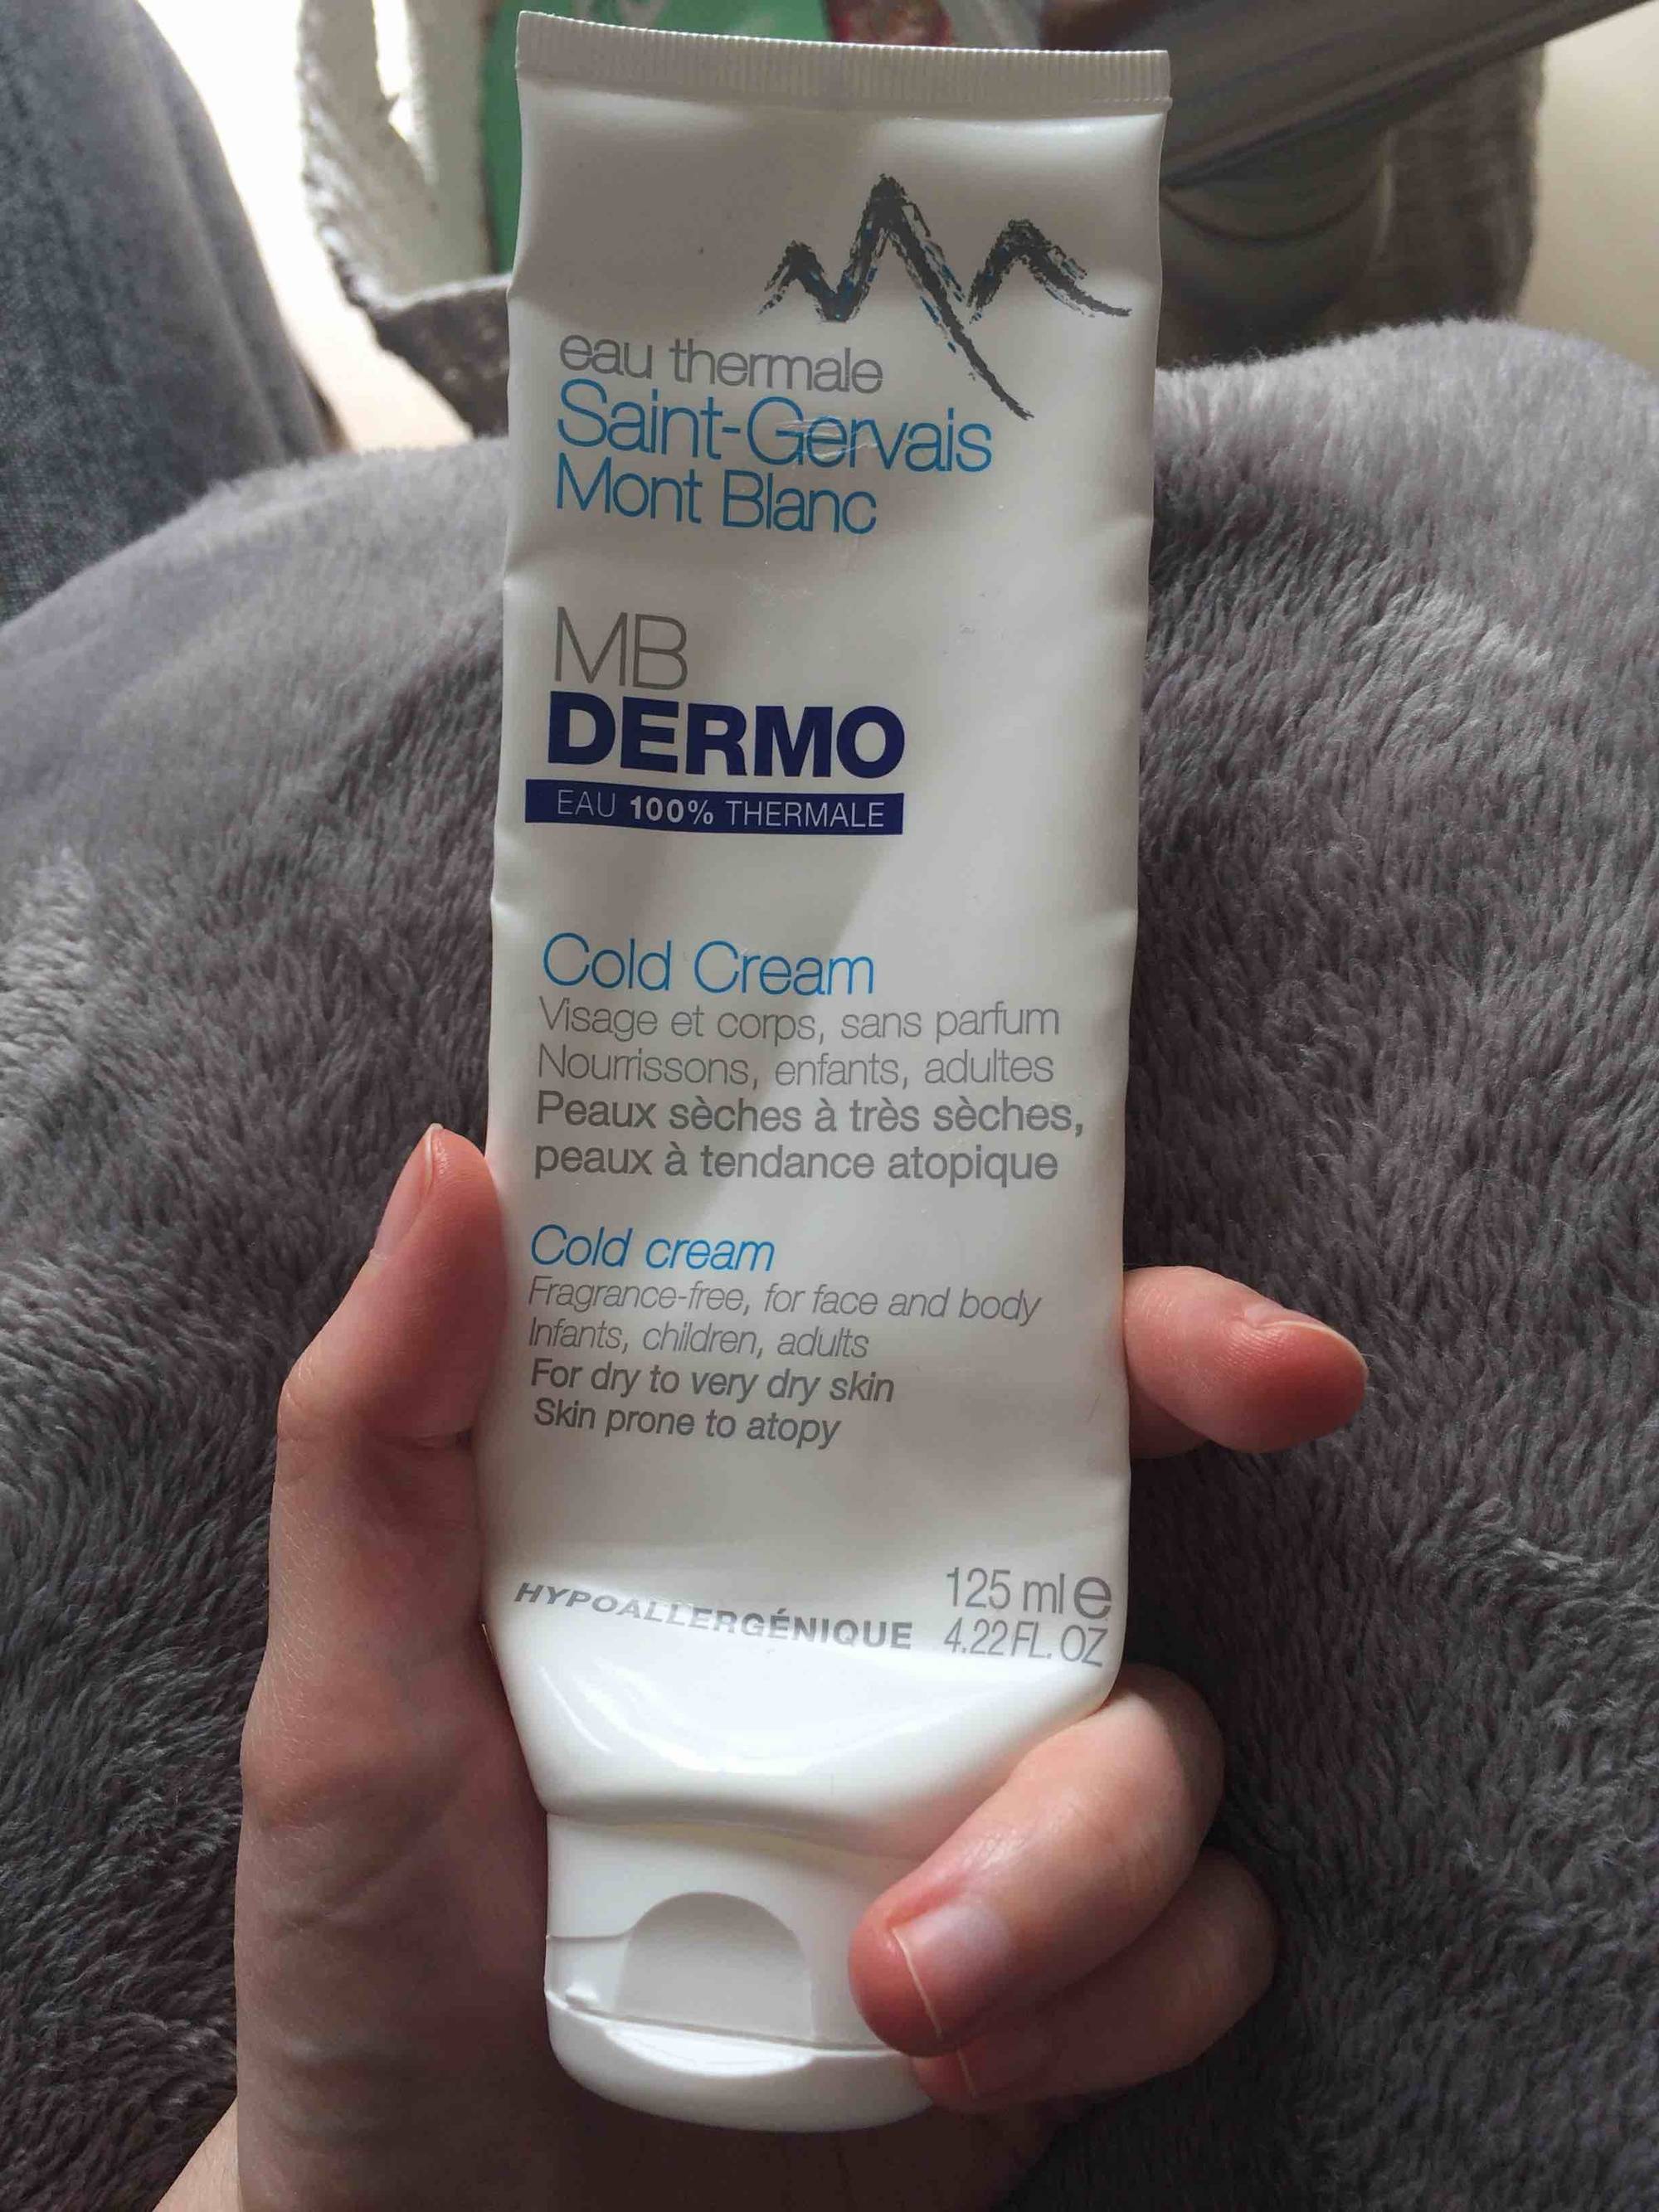 SAINT-GERVAIS MONT BLANC - MB Dermo - Cold cream pour visage et corps